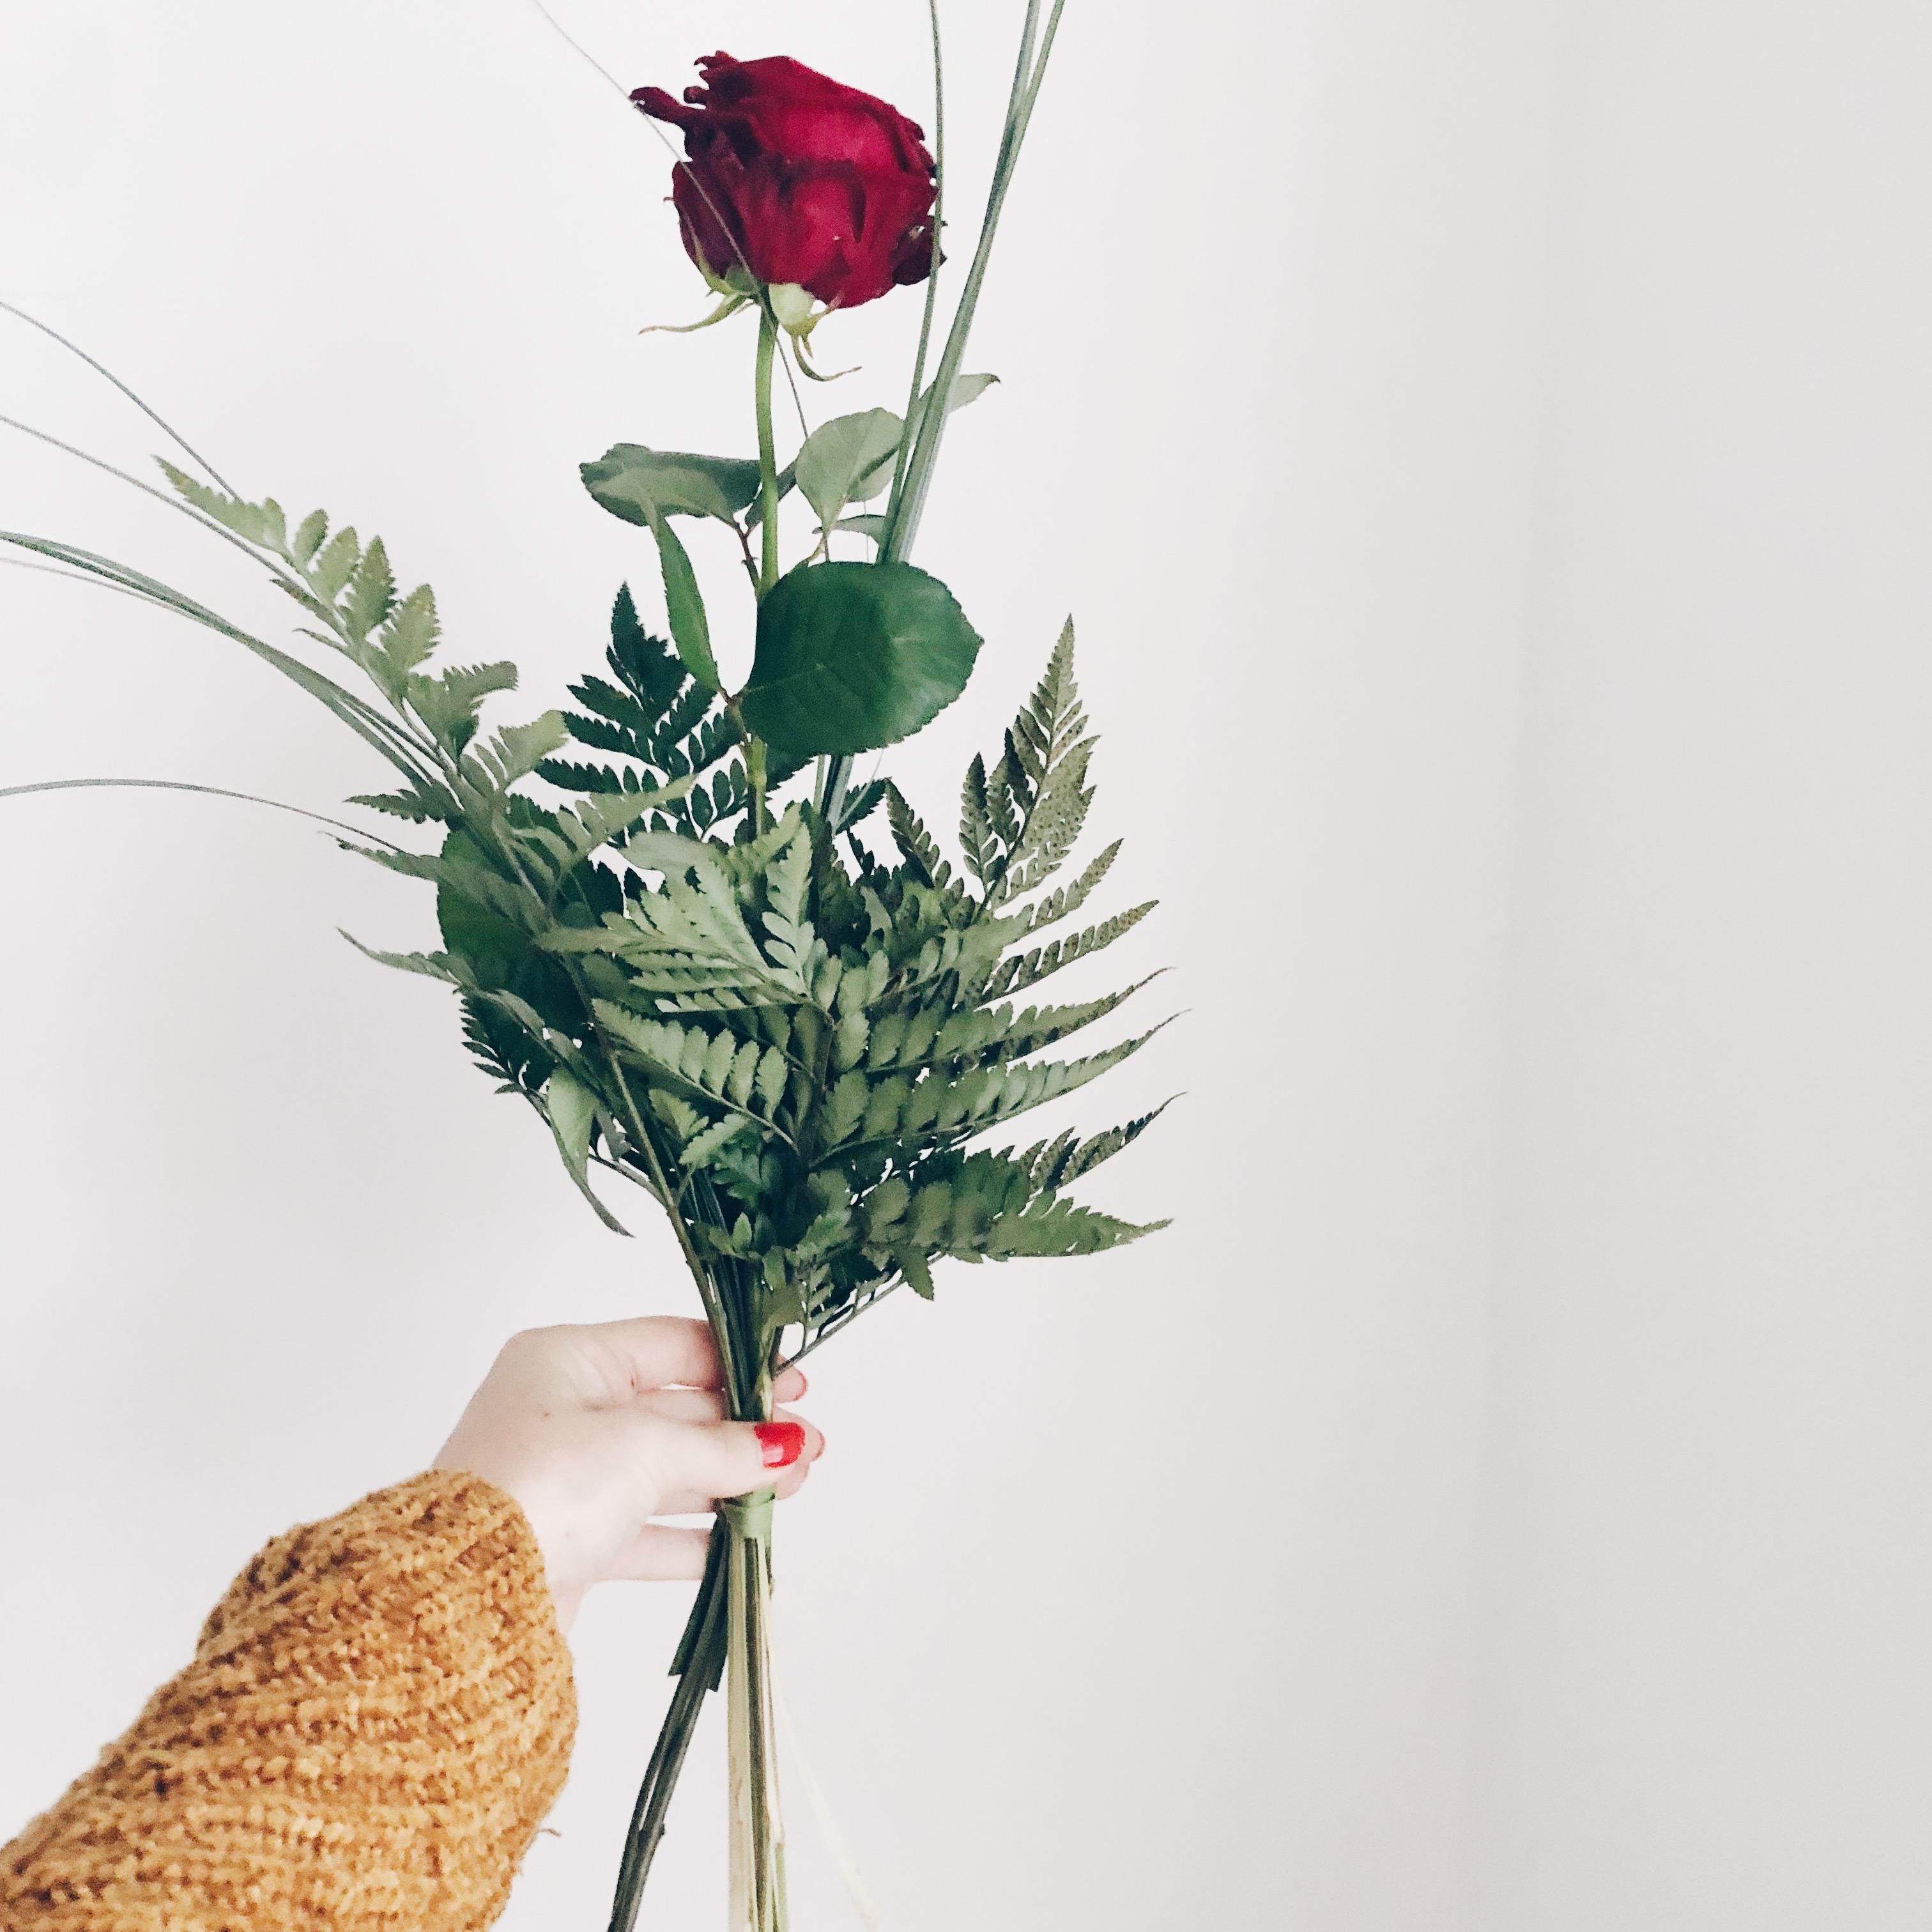 Rosenliebe❤️ #rose #flower #home #love #redrose